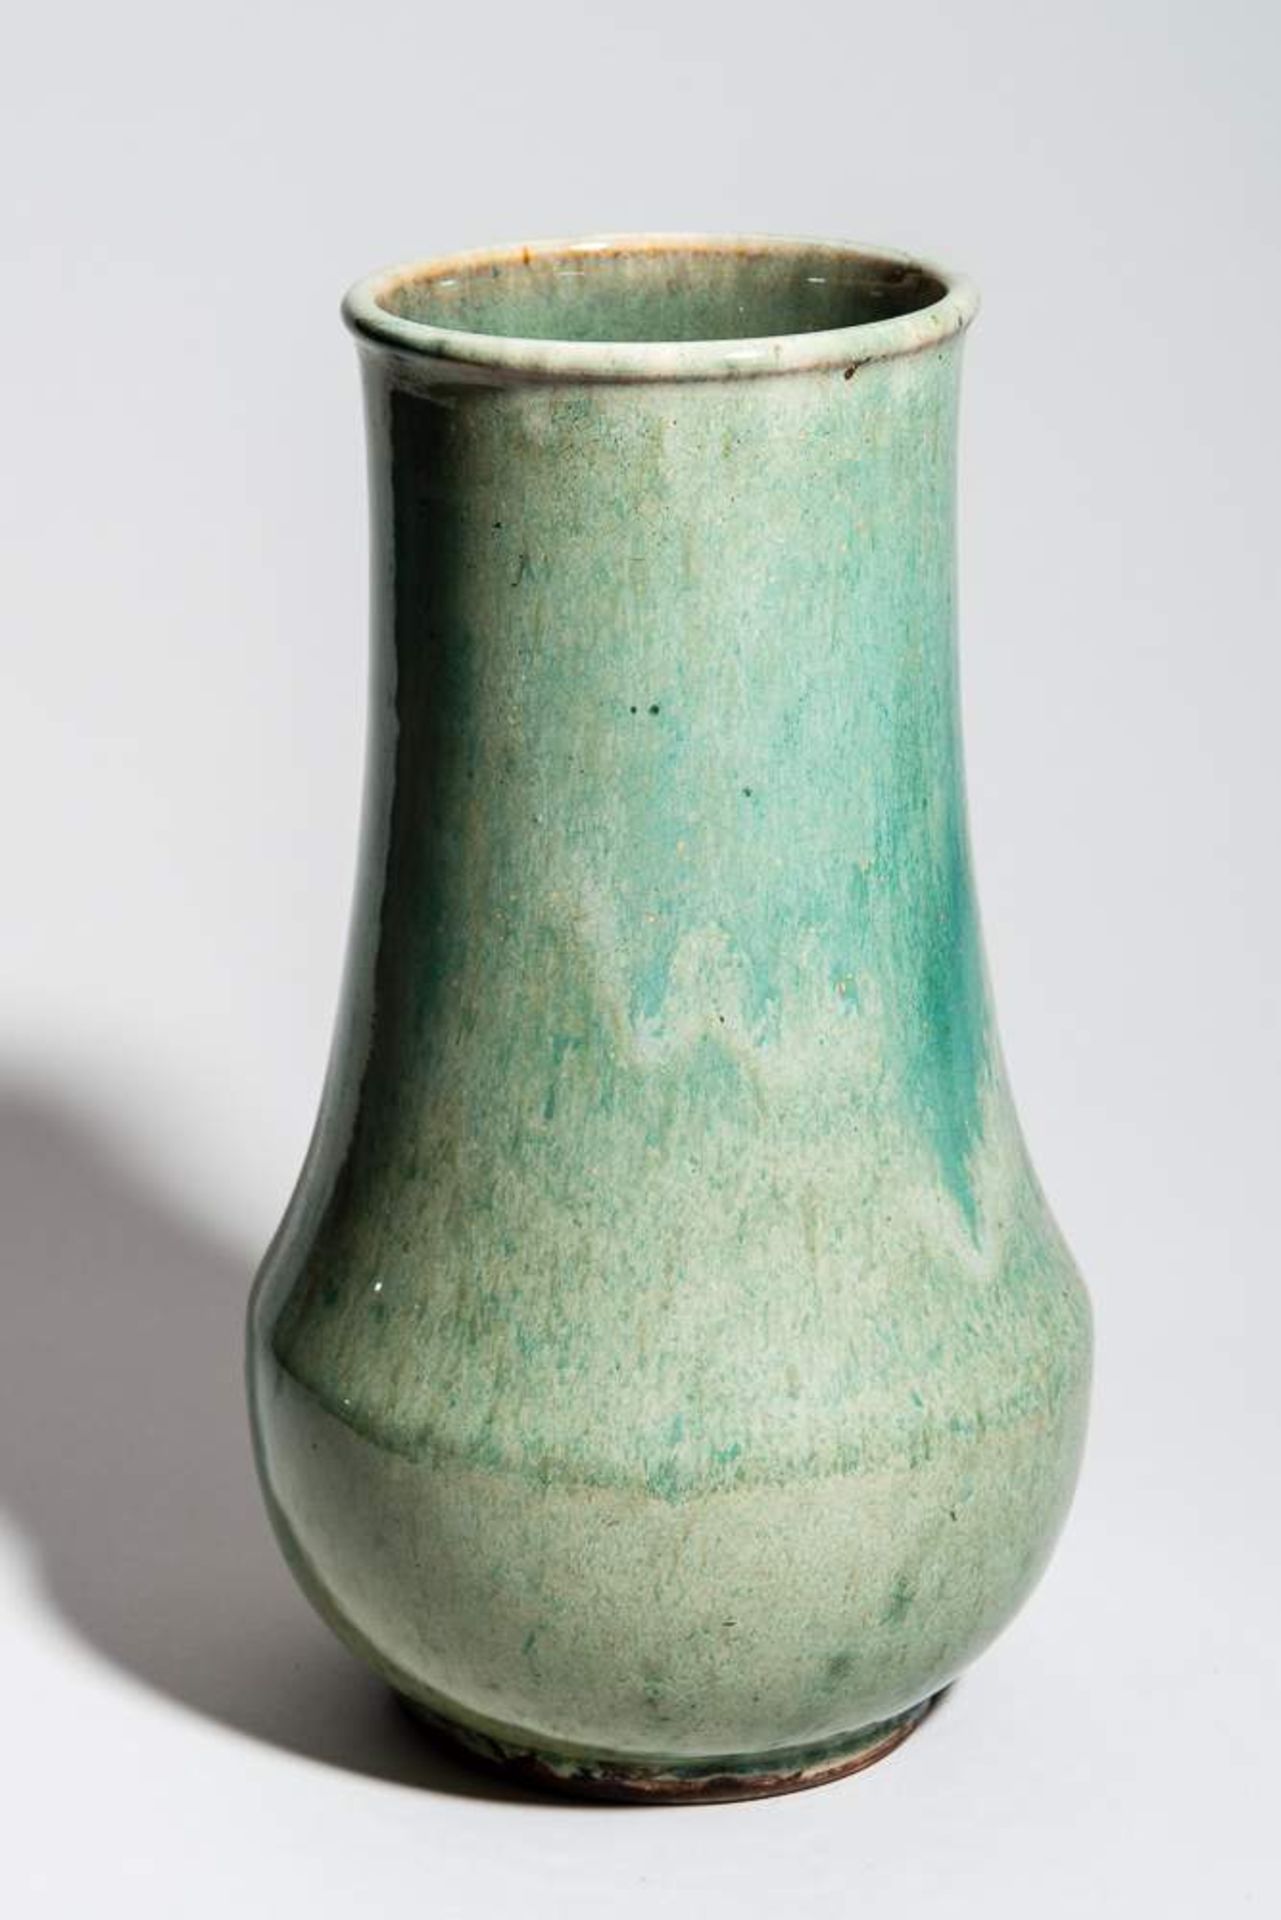 GRÖSSERE HALSVASE
Porzellan. China, Qing-Dynastie, 19. Jh.Sehr feinsinnig bis raffiniert angebrachte